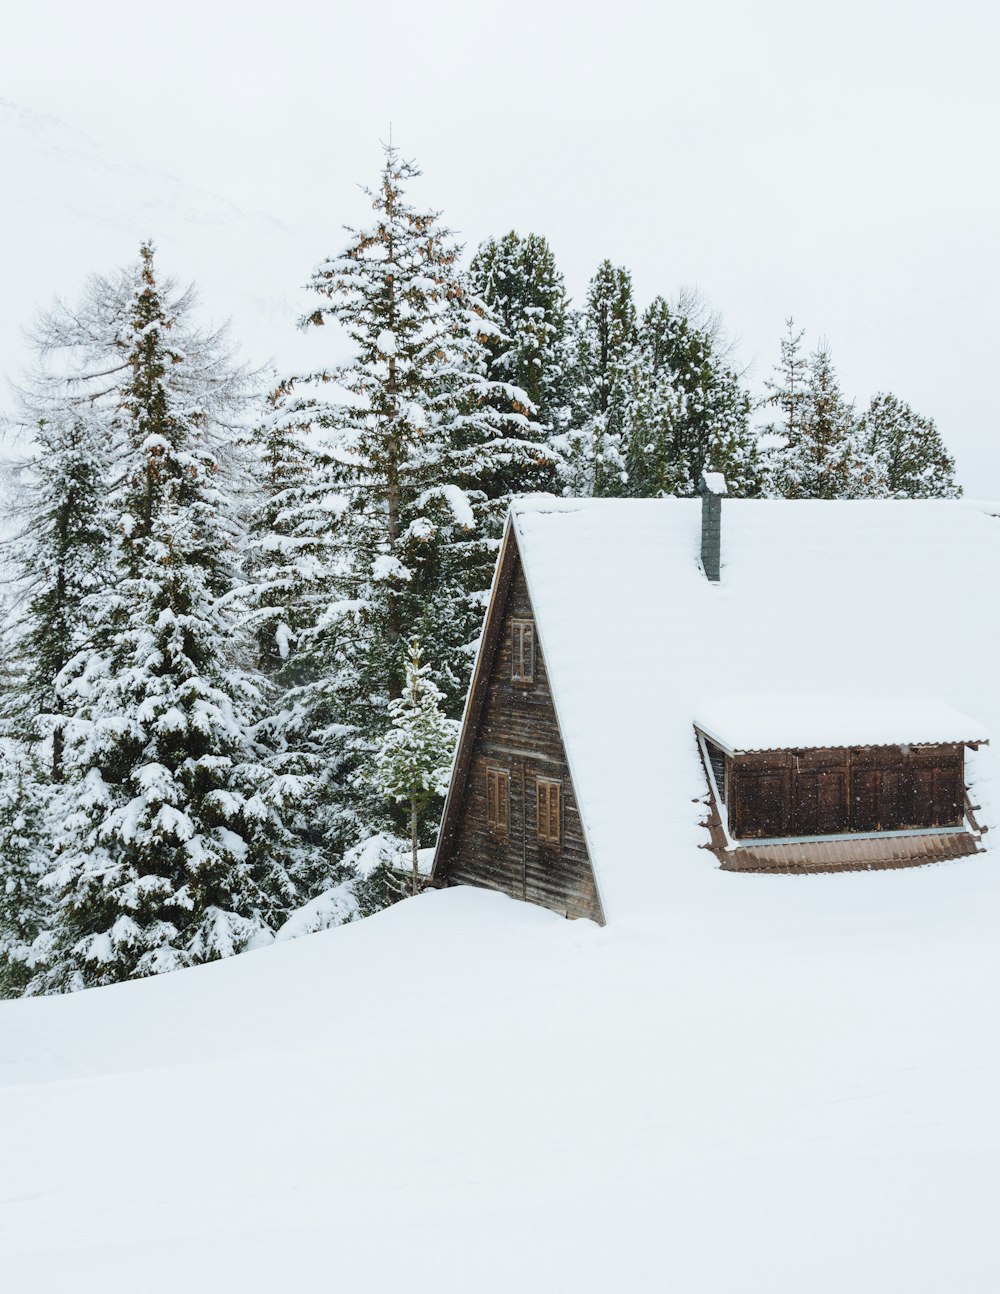 braune Hütte, die tagsüber neben Bäumen mit Schnee bedeckt ist